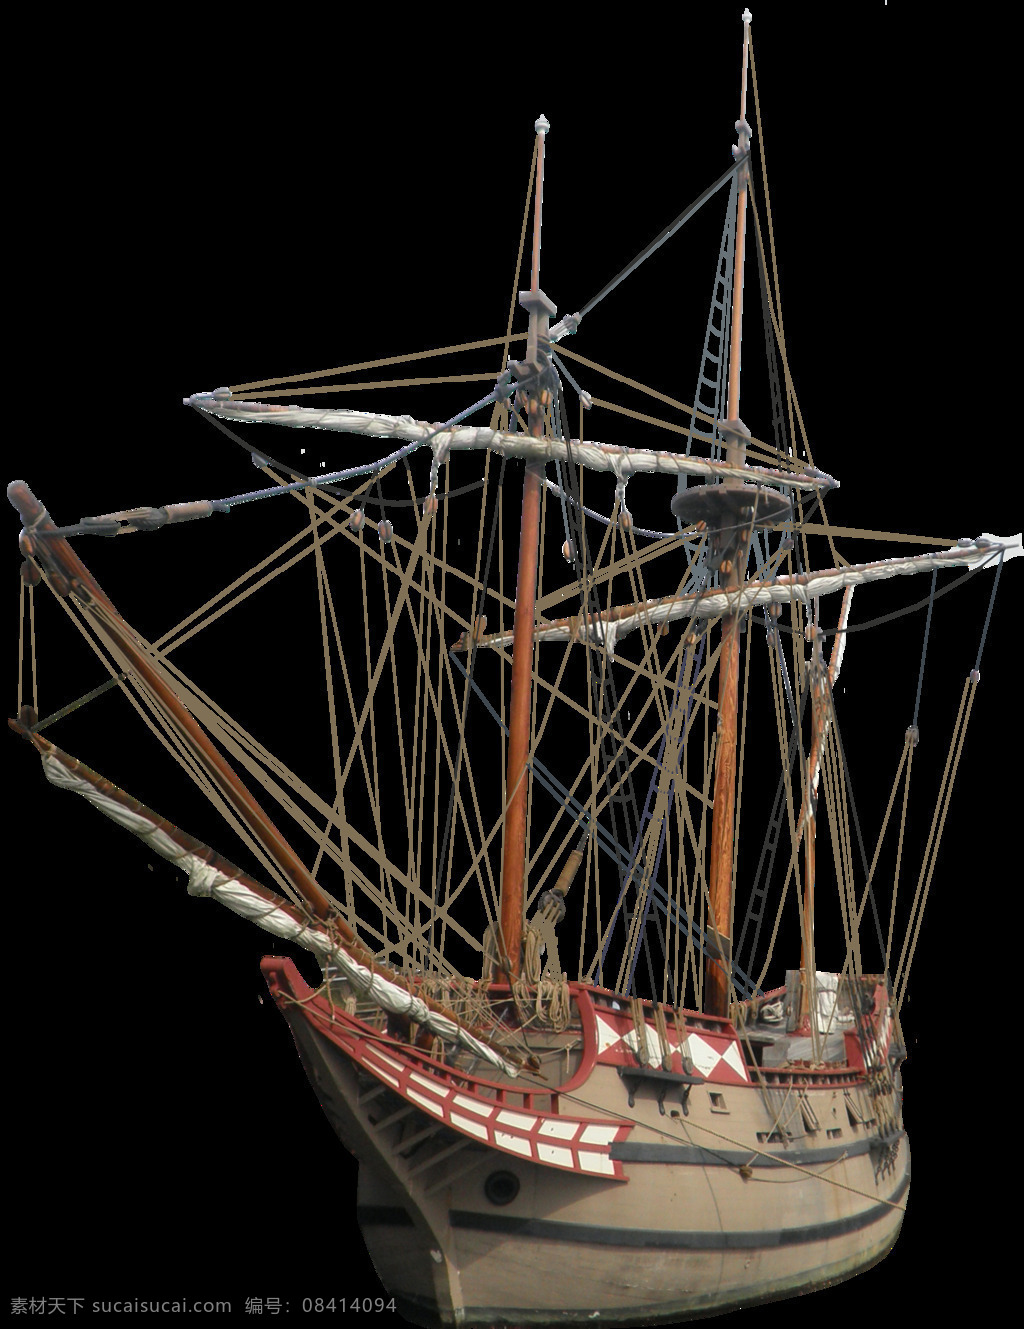 复古 桅杆 帆船 免 抠 透明 图 层 大海 高清 卡通帆船图片 小帆船图片 帆船素材 中国帆船 古代帆船 帆船矢量图 古帆船 一帆风顺图片 木帆船